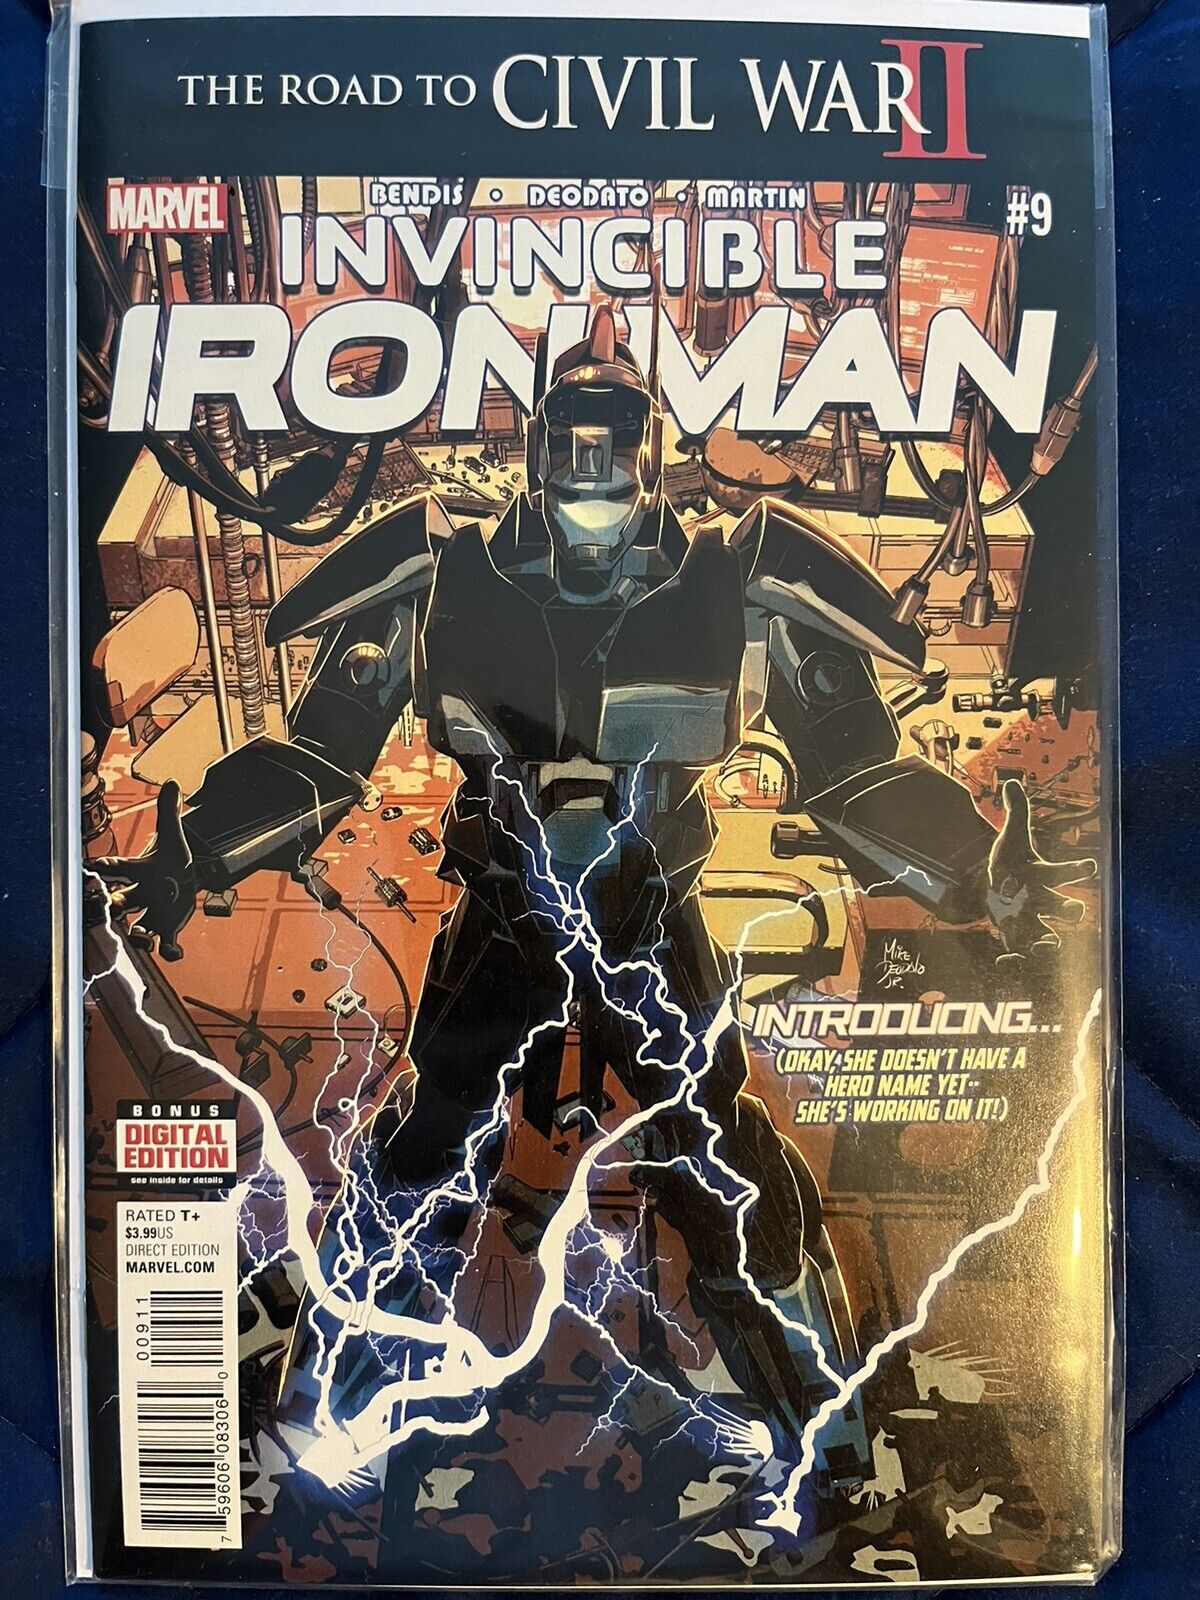 Invincible Iron Man #9 (Marvel Comics July 2016)